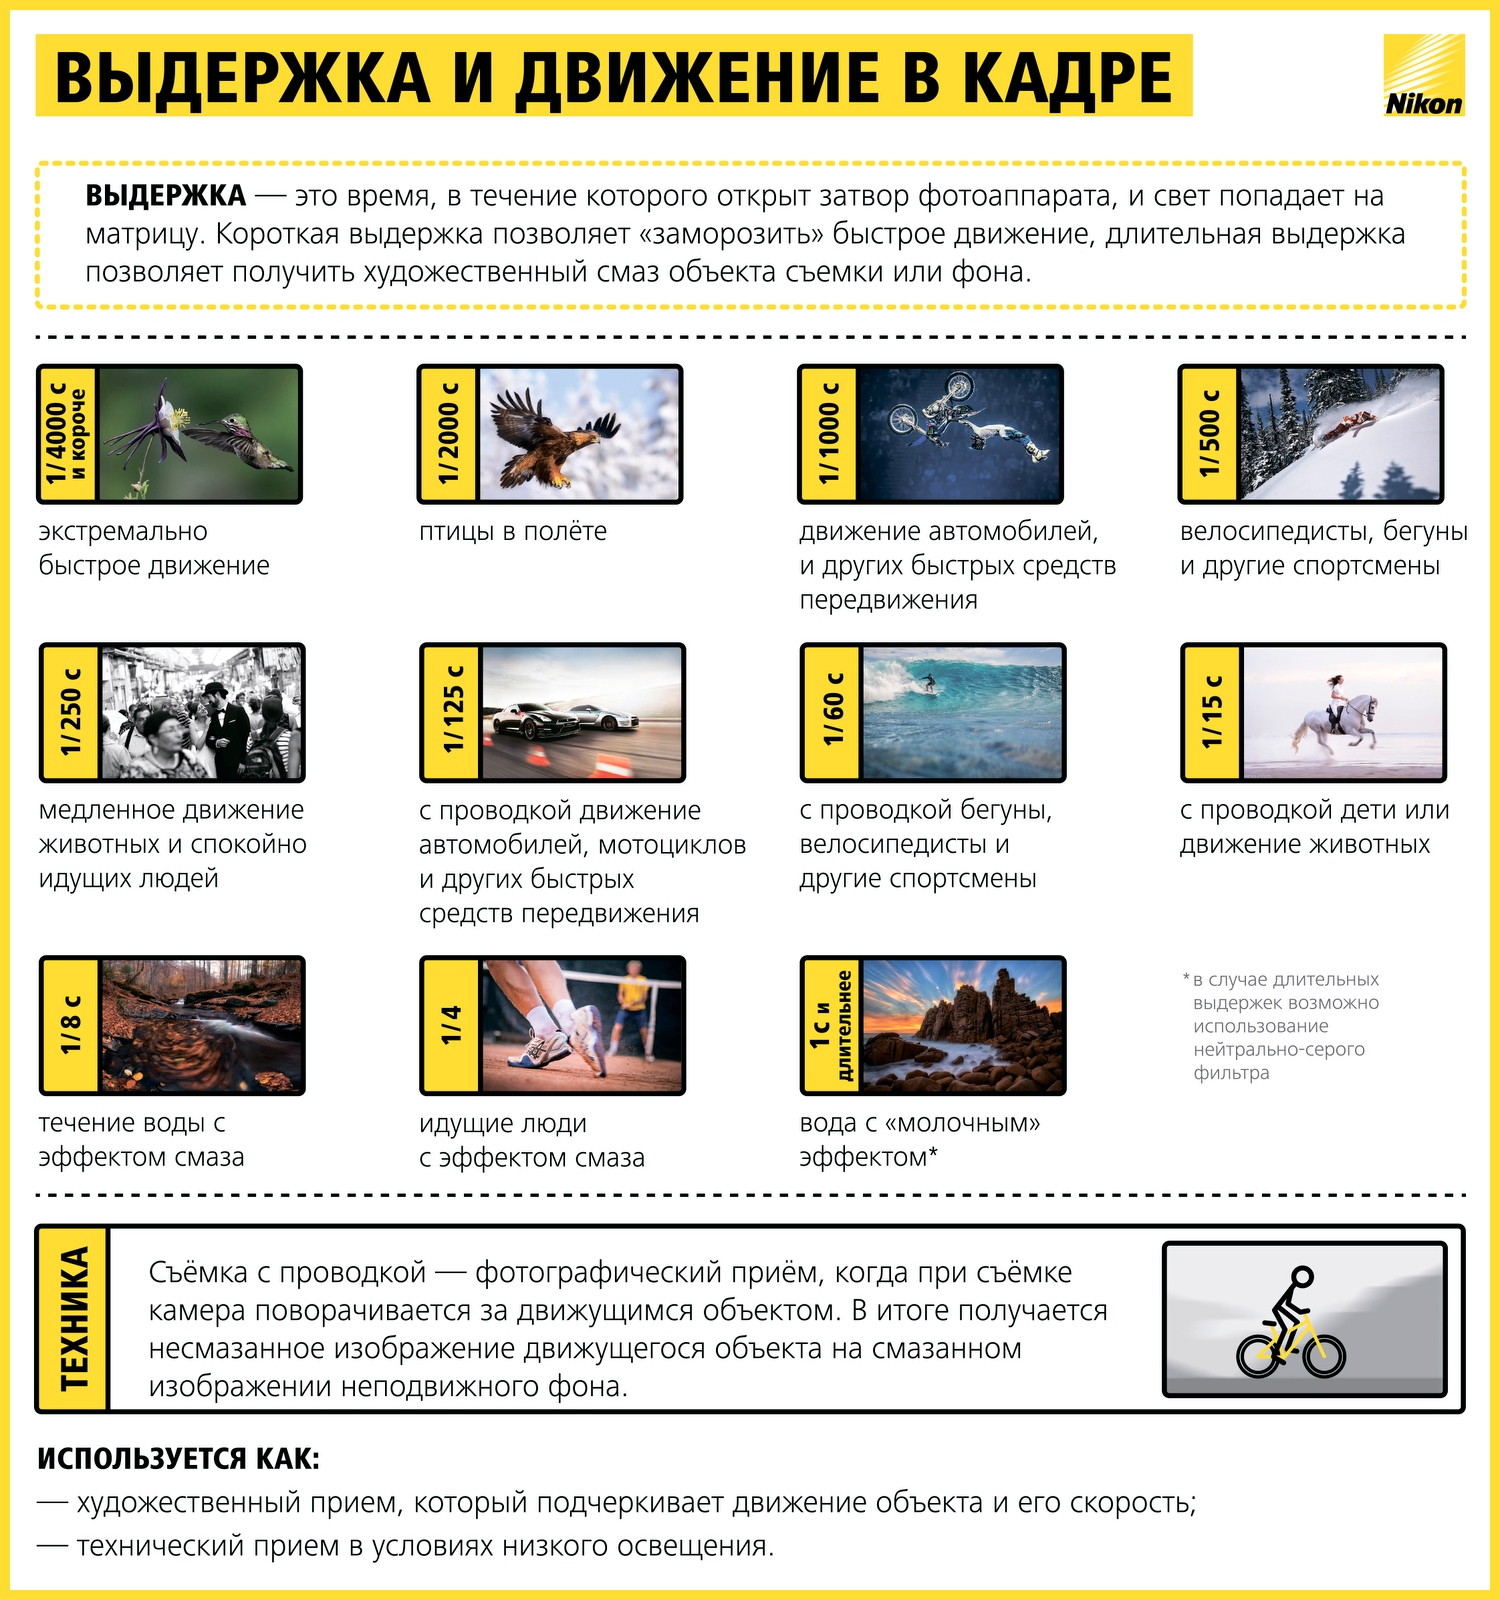 Как научиться фотографировать: пошаговая инструкция от Nikon Info_nikon_06